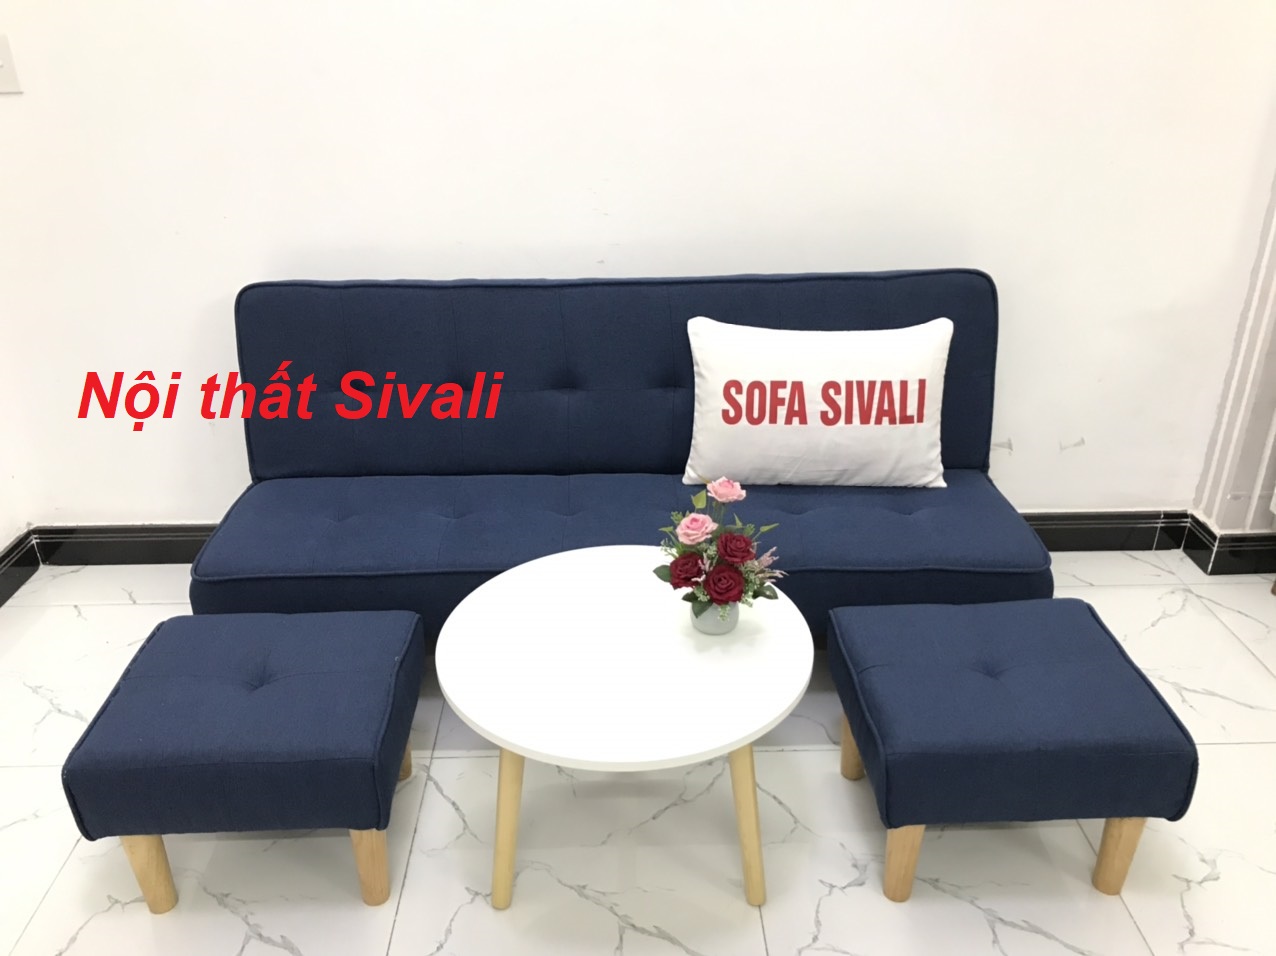 [HCM]Sofa giường phòng khách giá rẻ ghế salon sofa bed màu xanh dương da trời đậm đen bật nằm vải Nội thất Sivali HCM Tphcm Sài Gòn